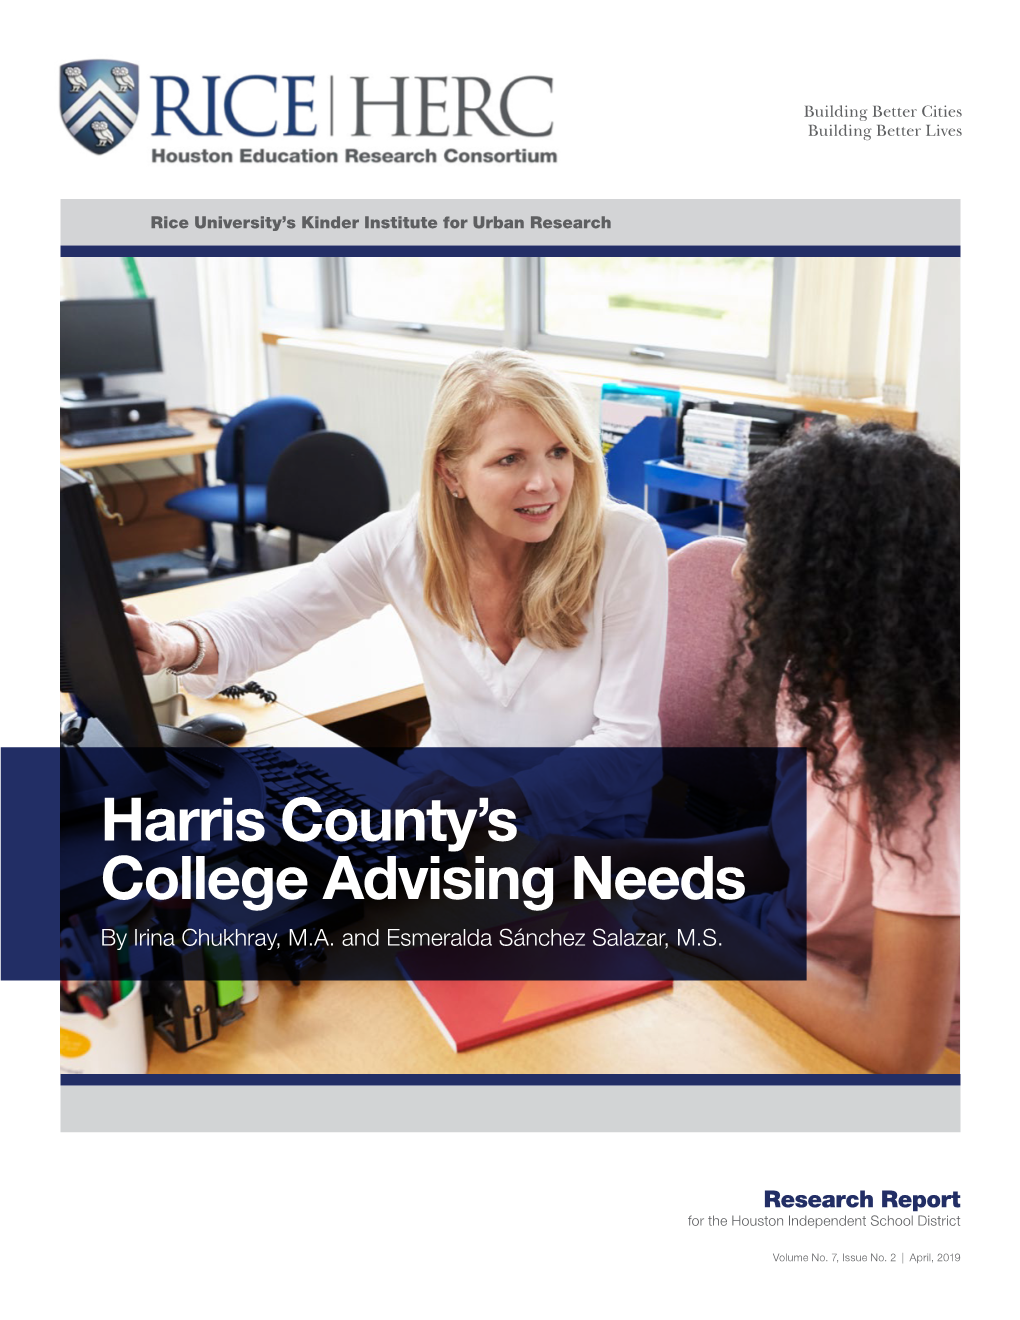 Harris County's College Advising Needs